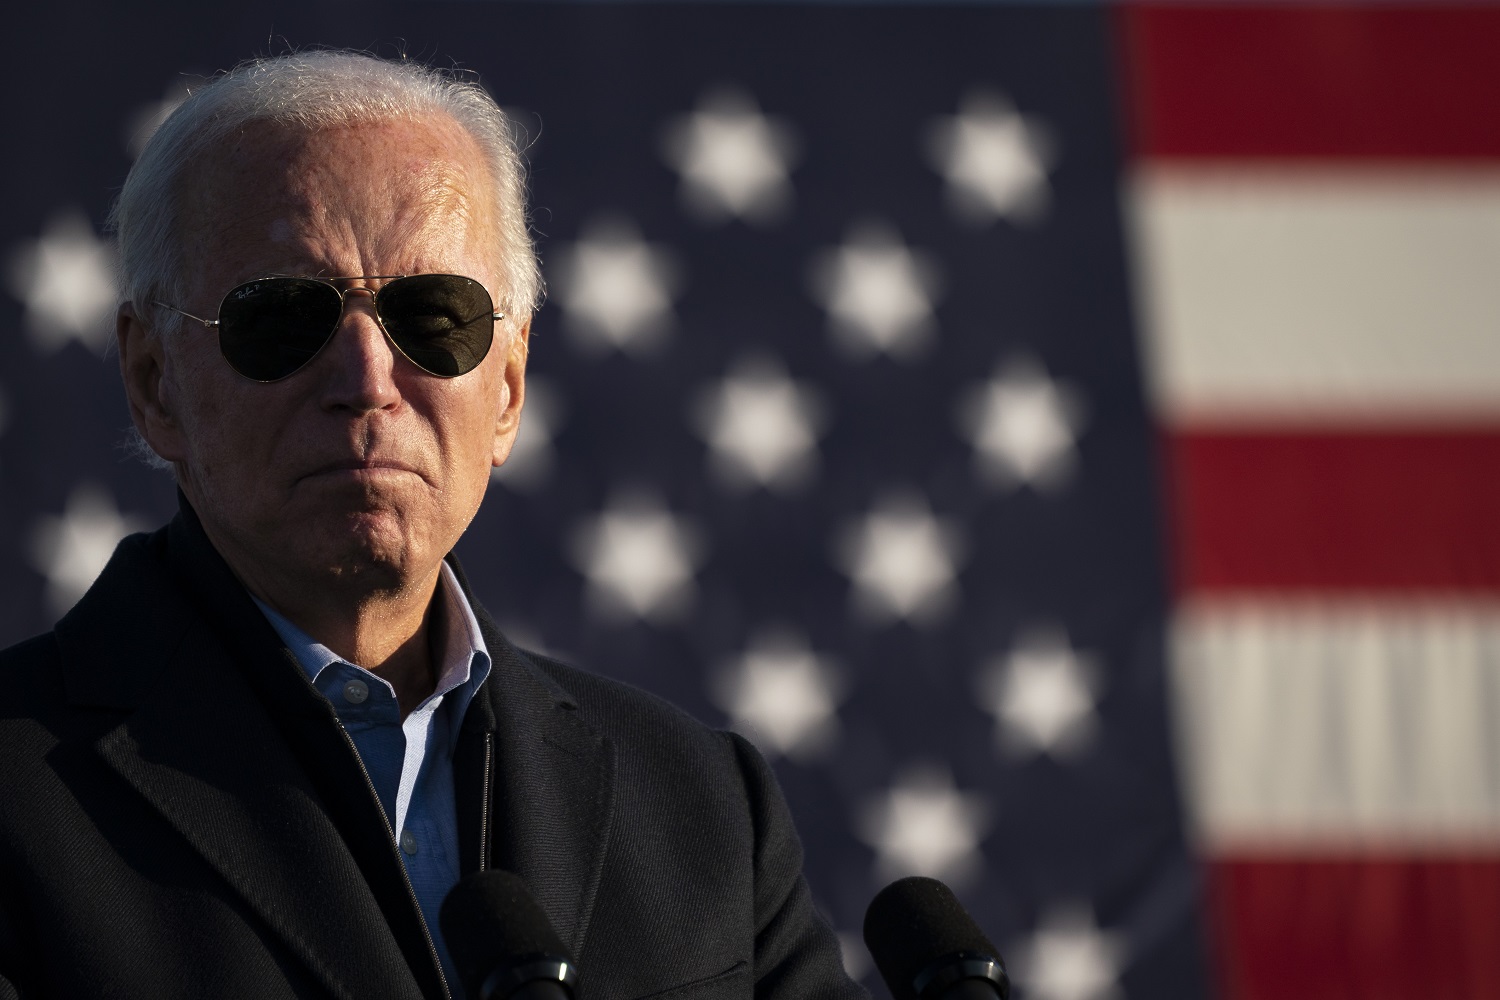 Top 7 Facts About Joe Biden